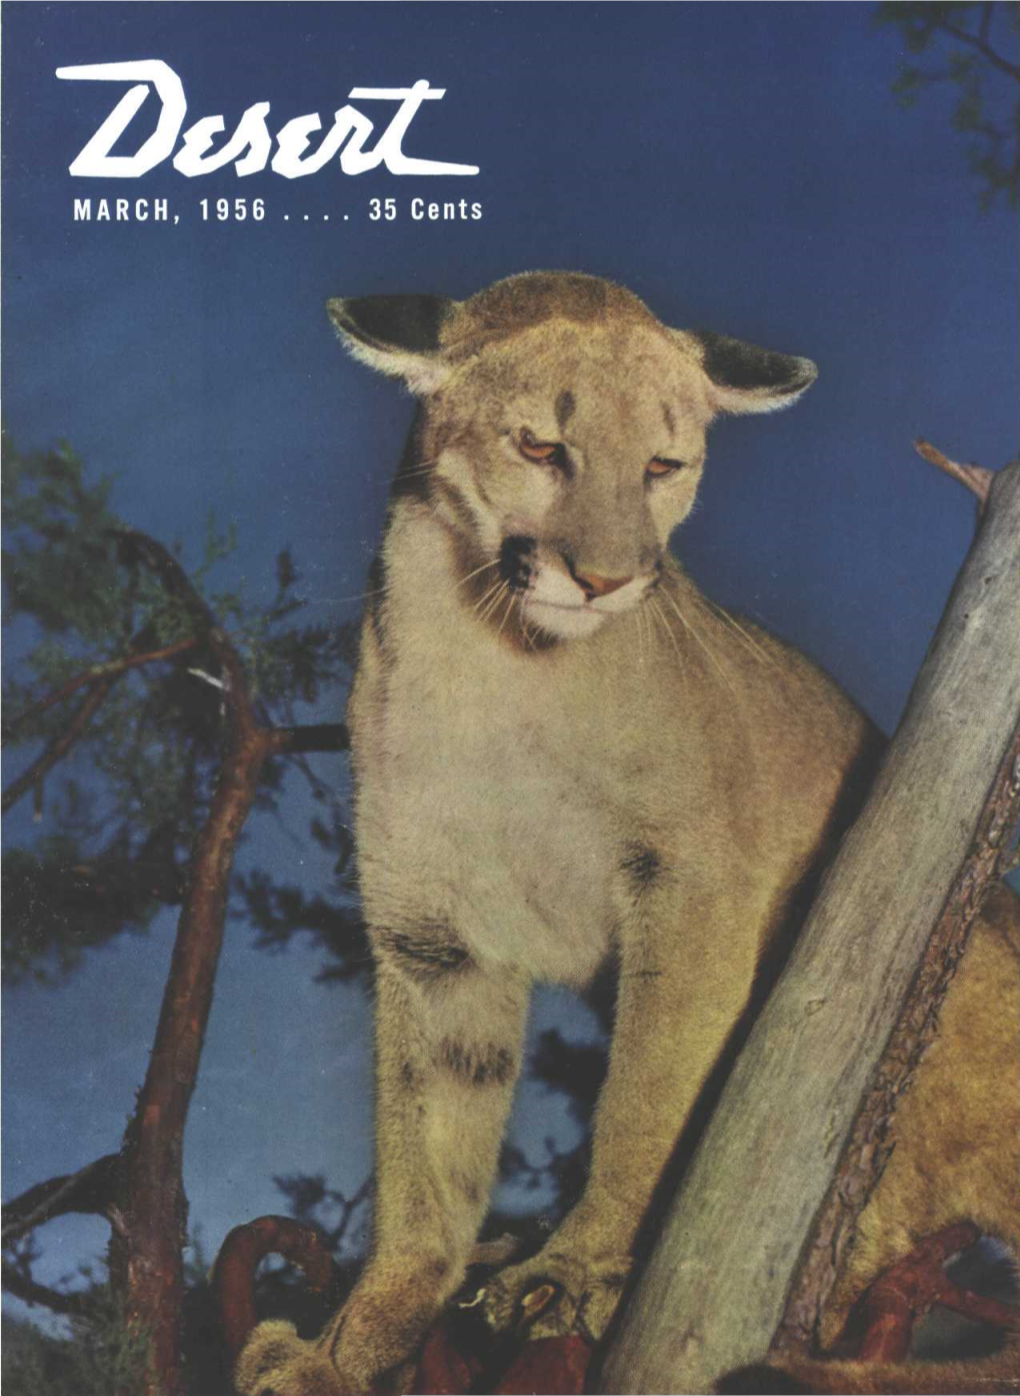 Desert Magazine 1956 March